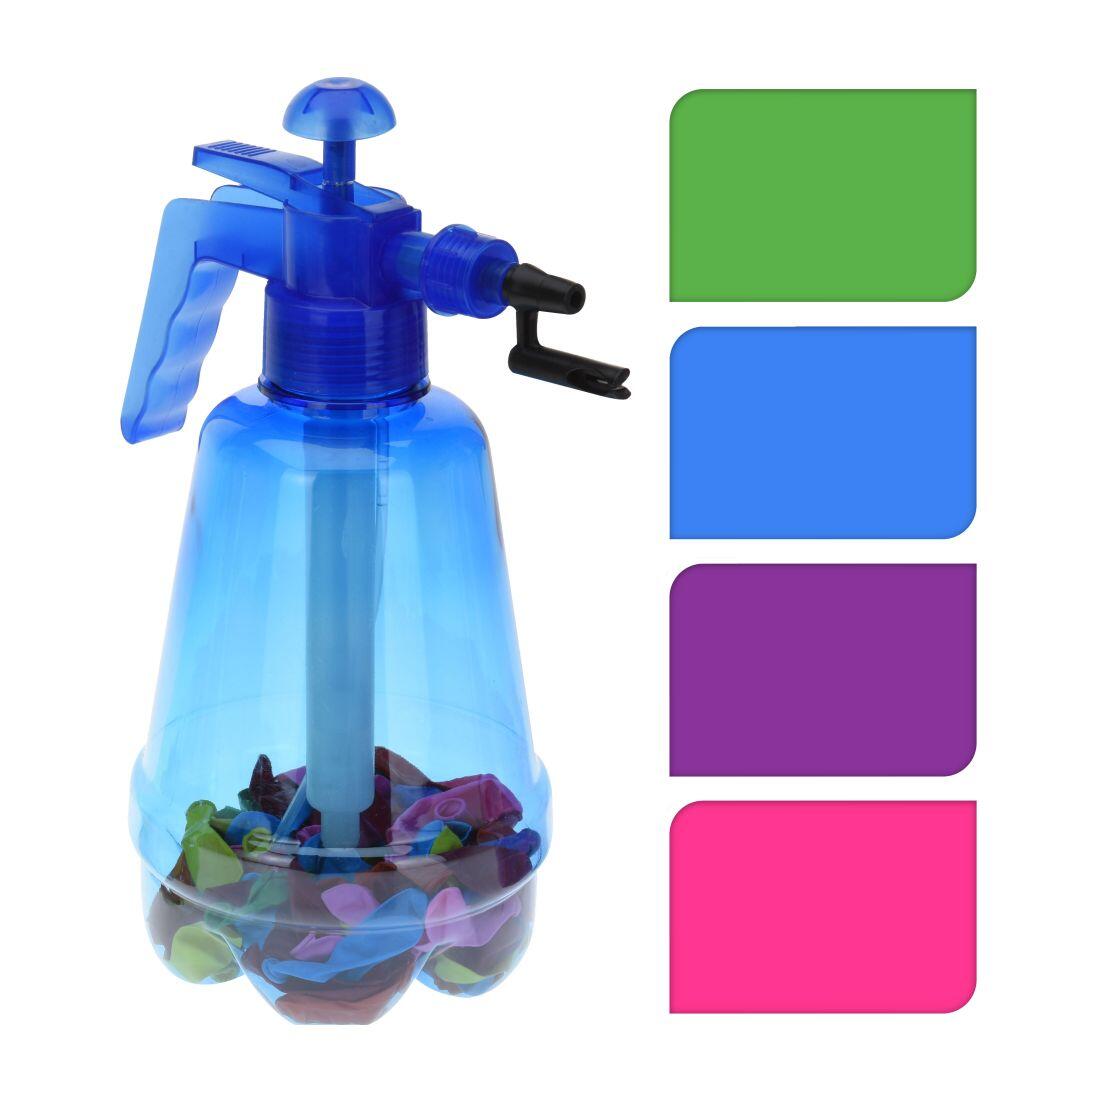 pumpička na vodní bomby 1,7l + balonky (100ks) mix barev 0.2 Kg MAXMIX Sklad14 385997 50